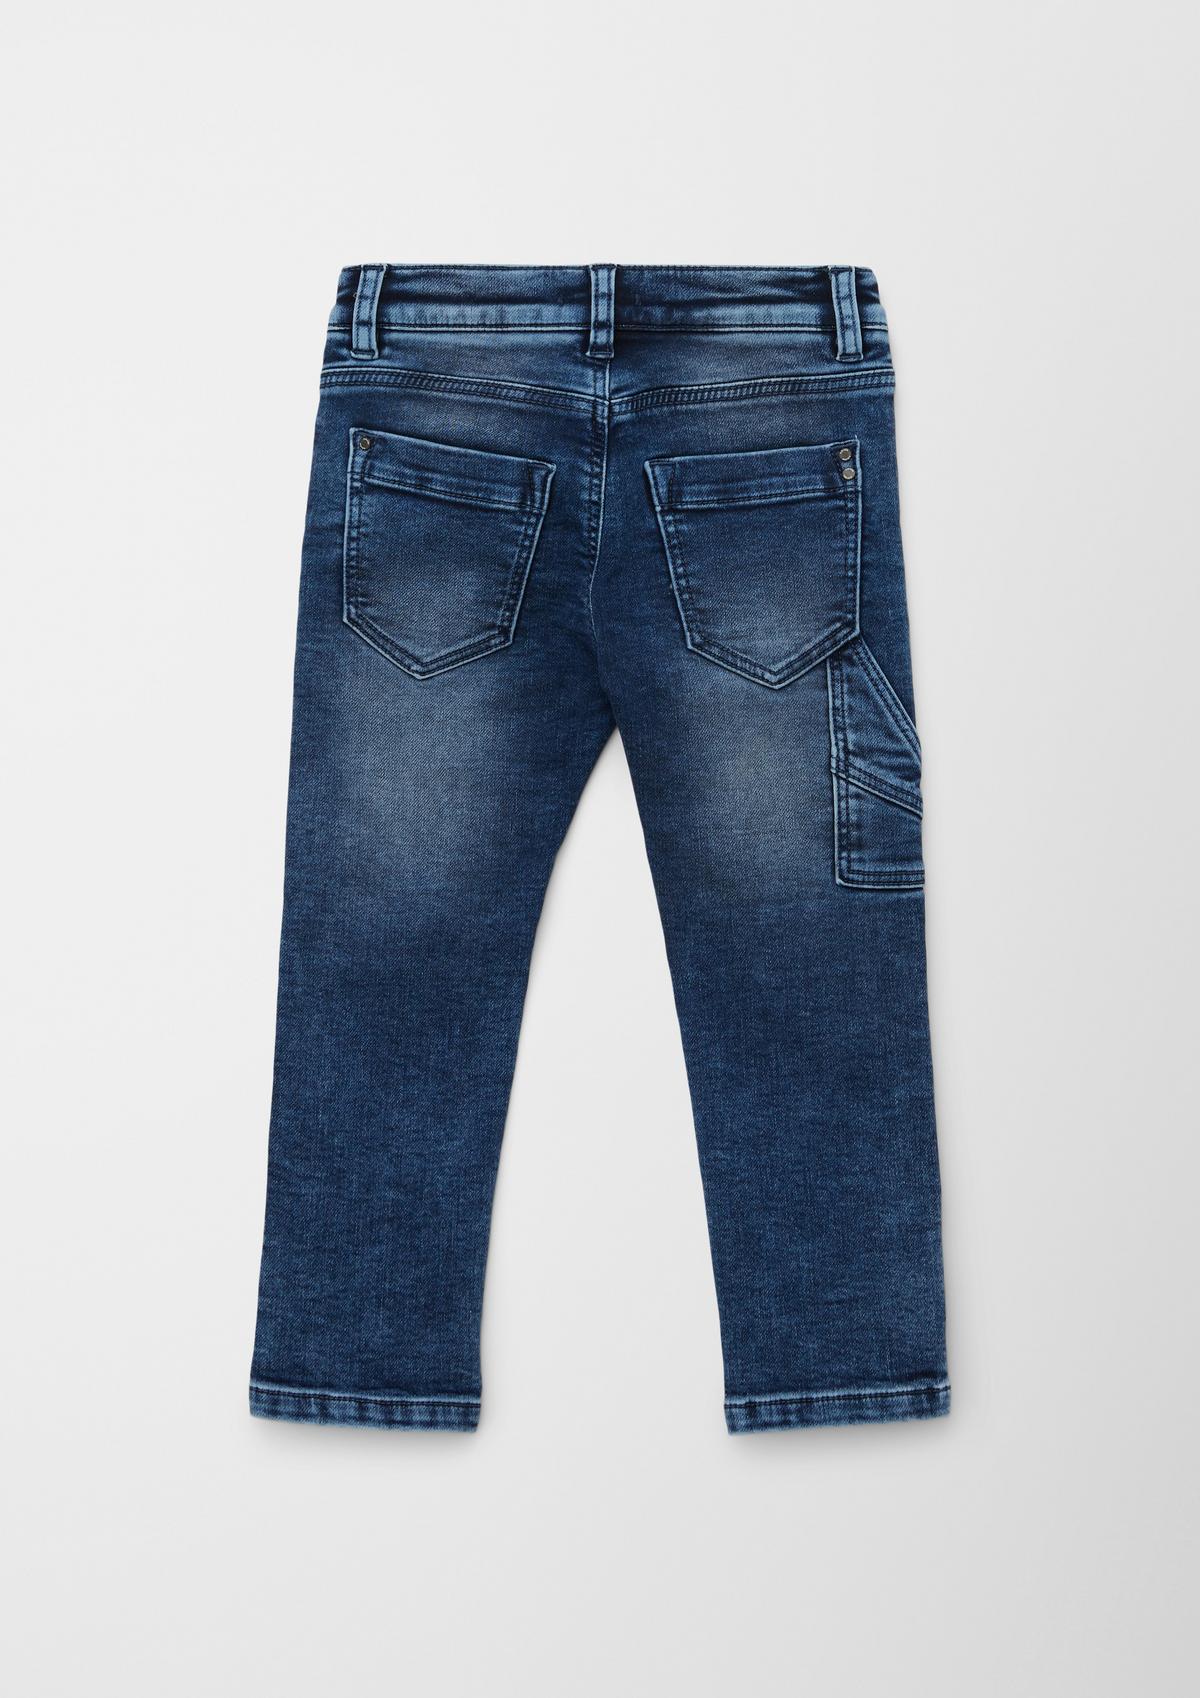 s.Oliver Jeans Pelle / Regular Fit / Mid Rise / Straight Leg